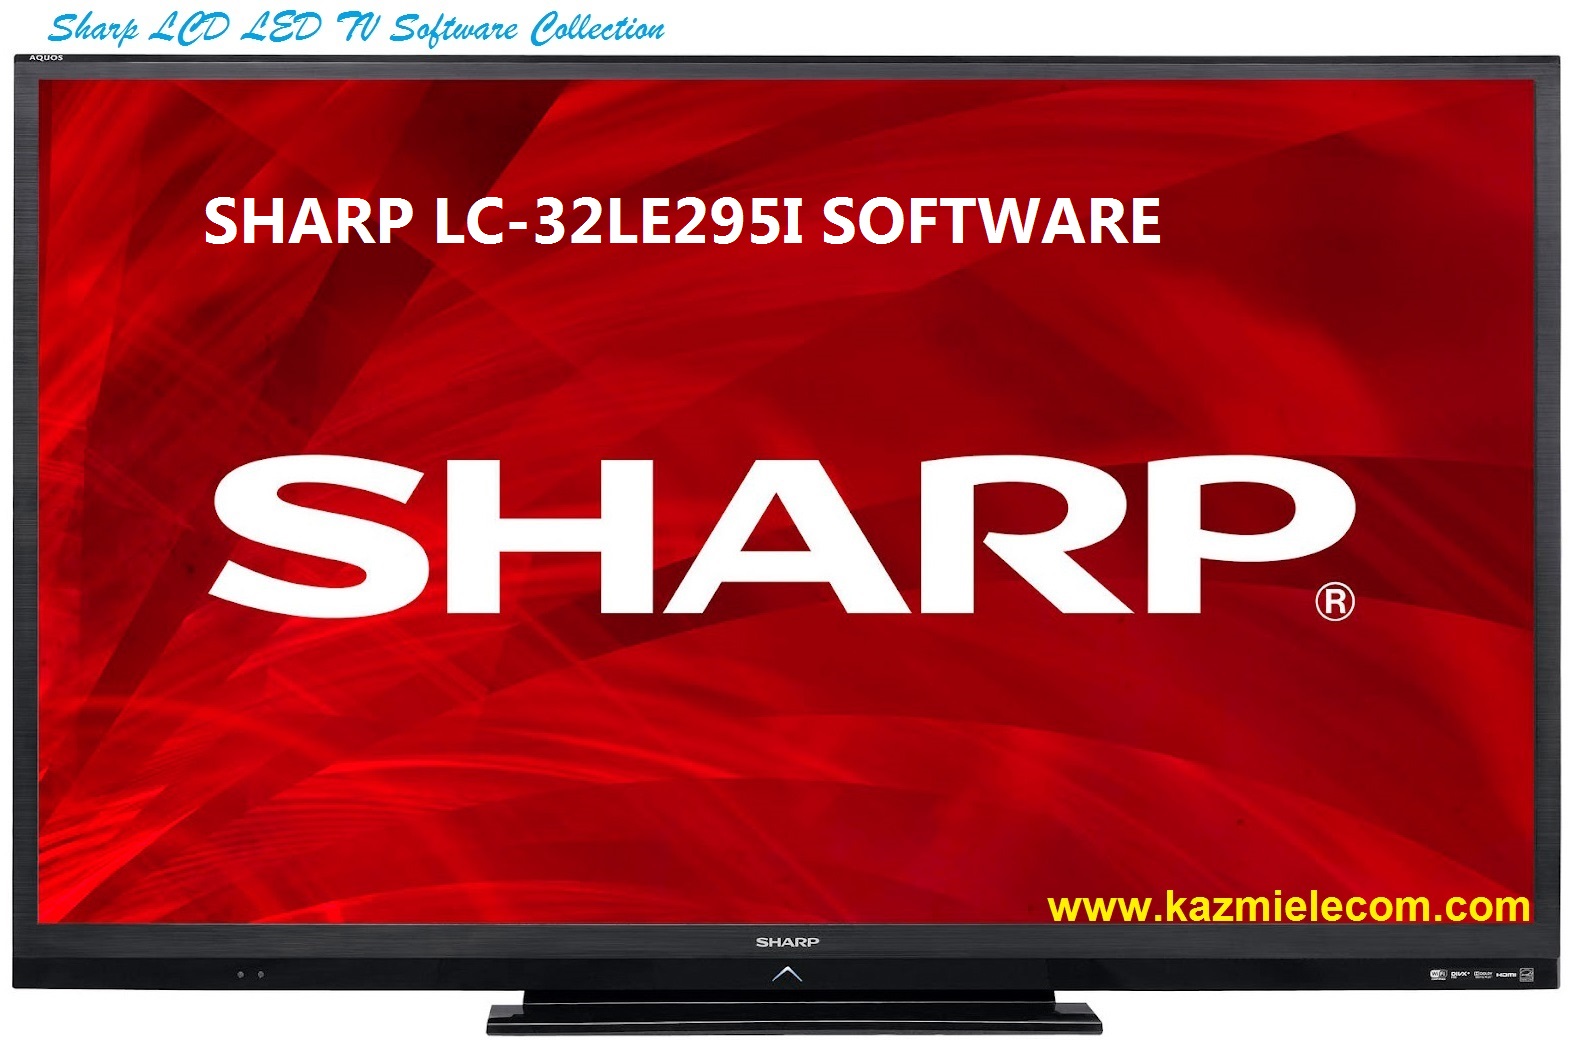 Sharp Lc-32Le295I